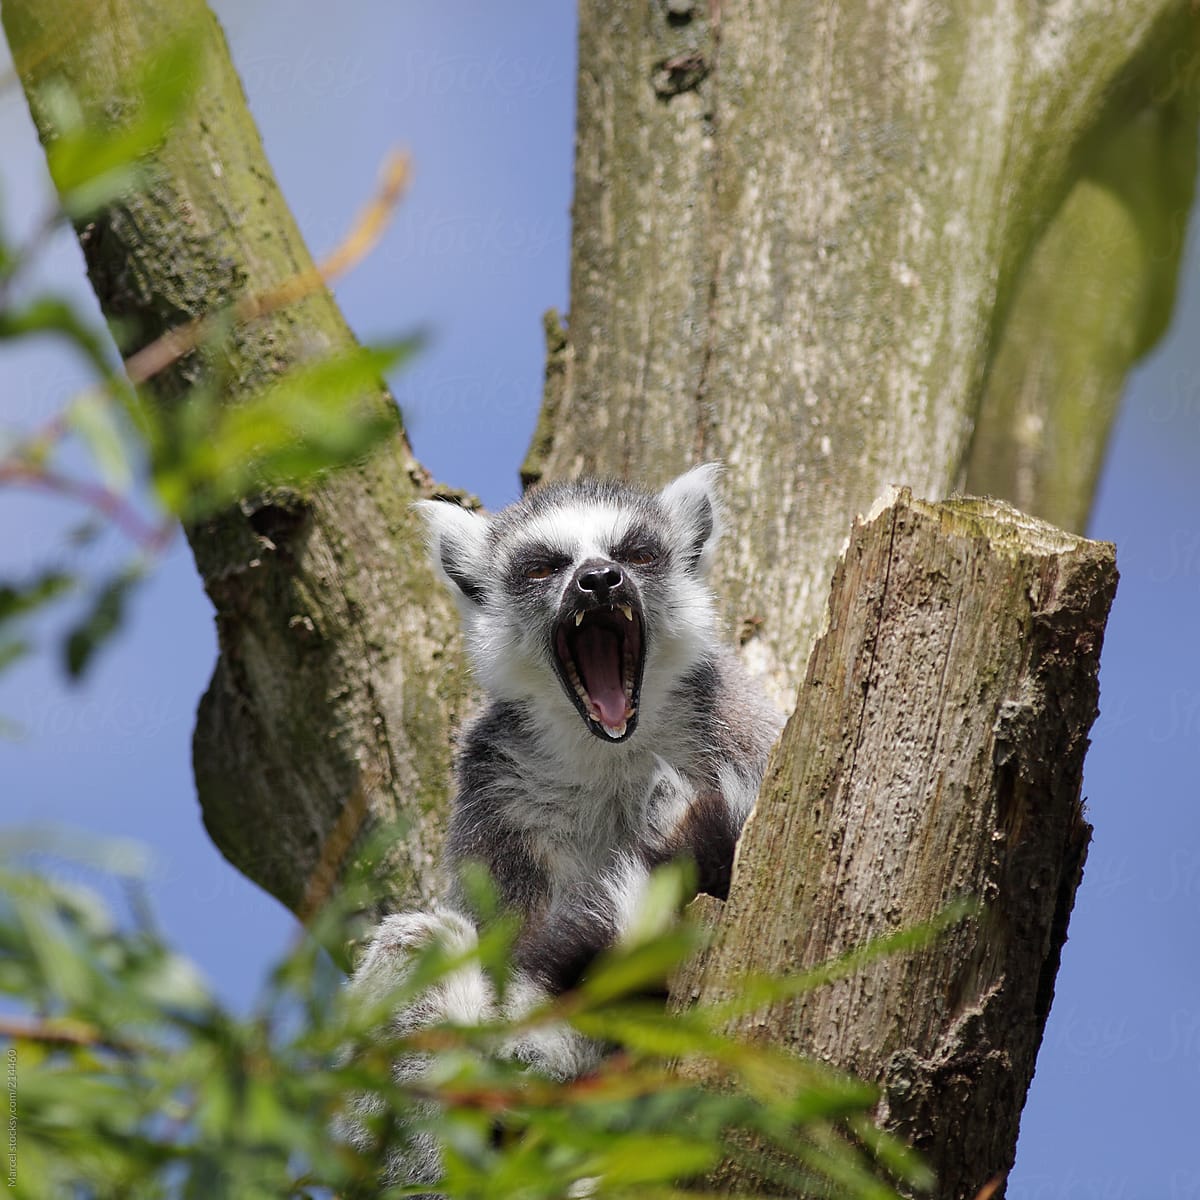 Screaming ring-tailed lemur